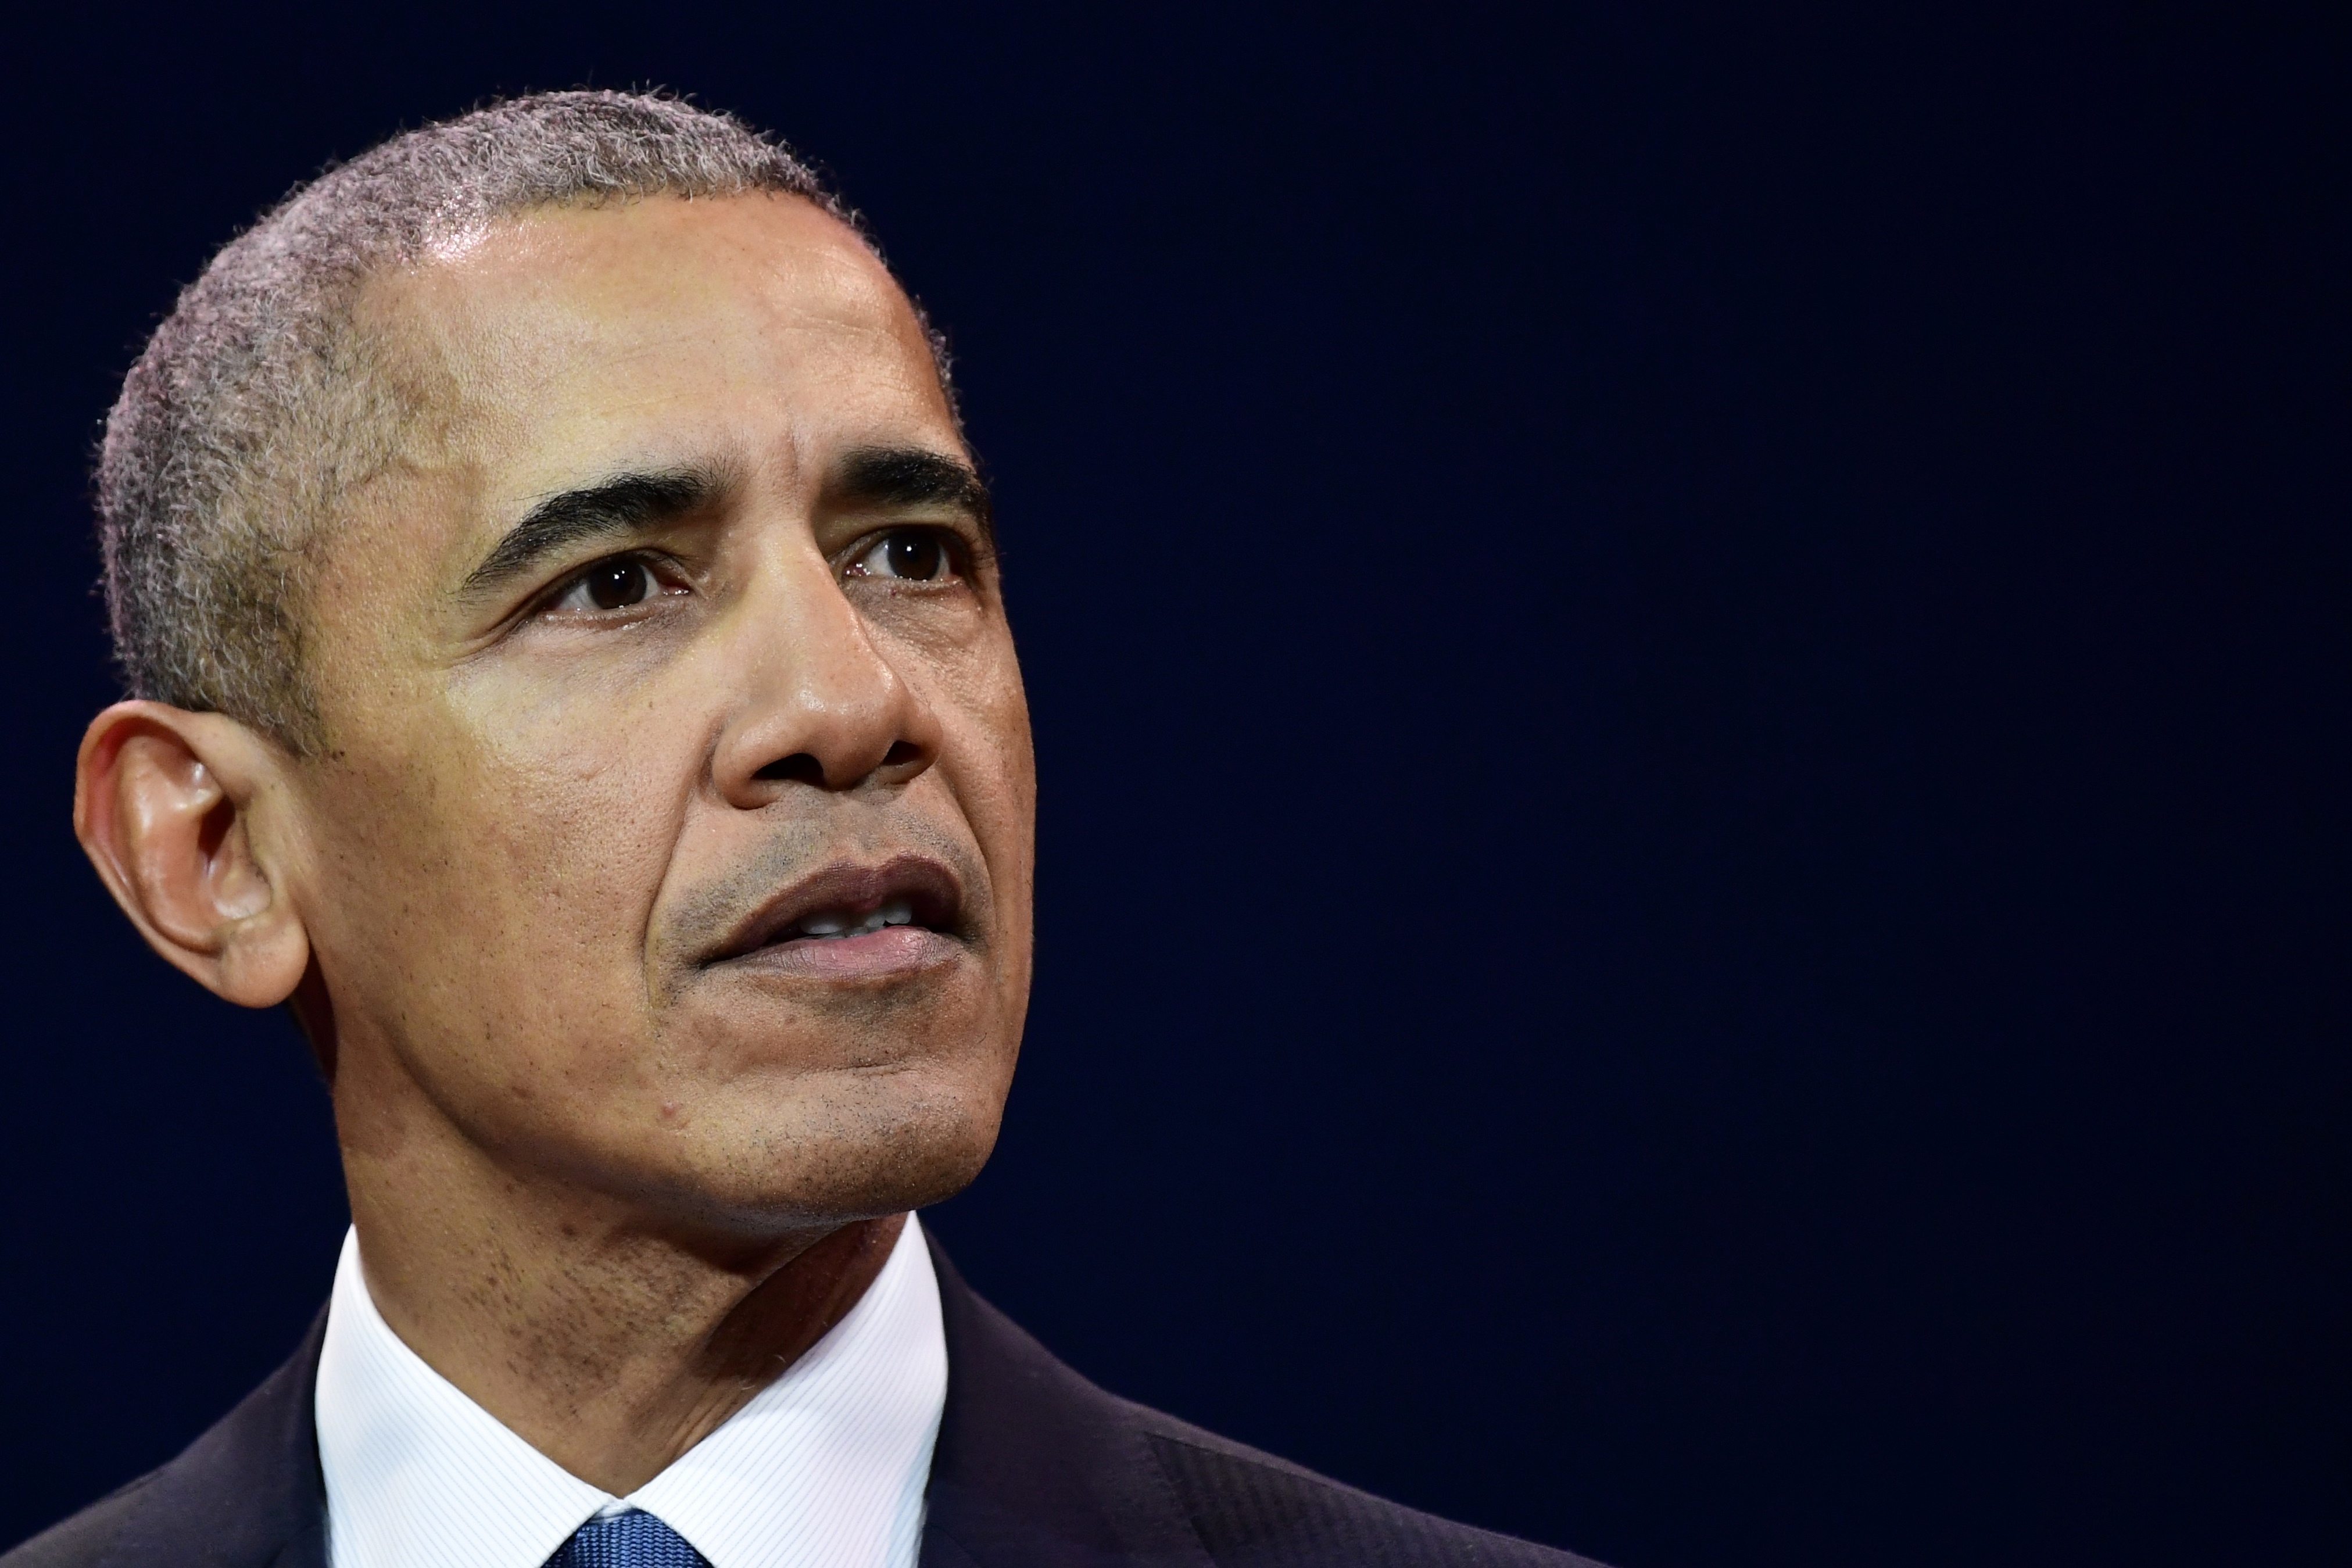 Barack Obama: presidente, premio Nobel y ahora ganador de un Emmy